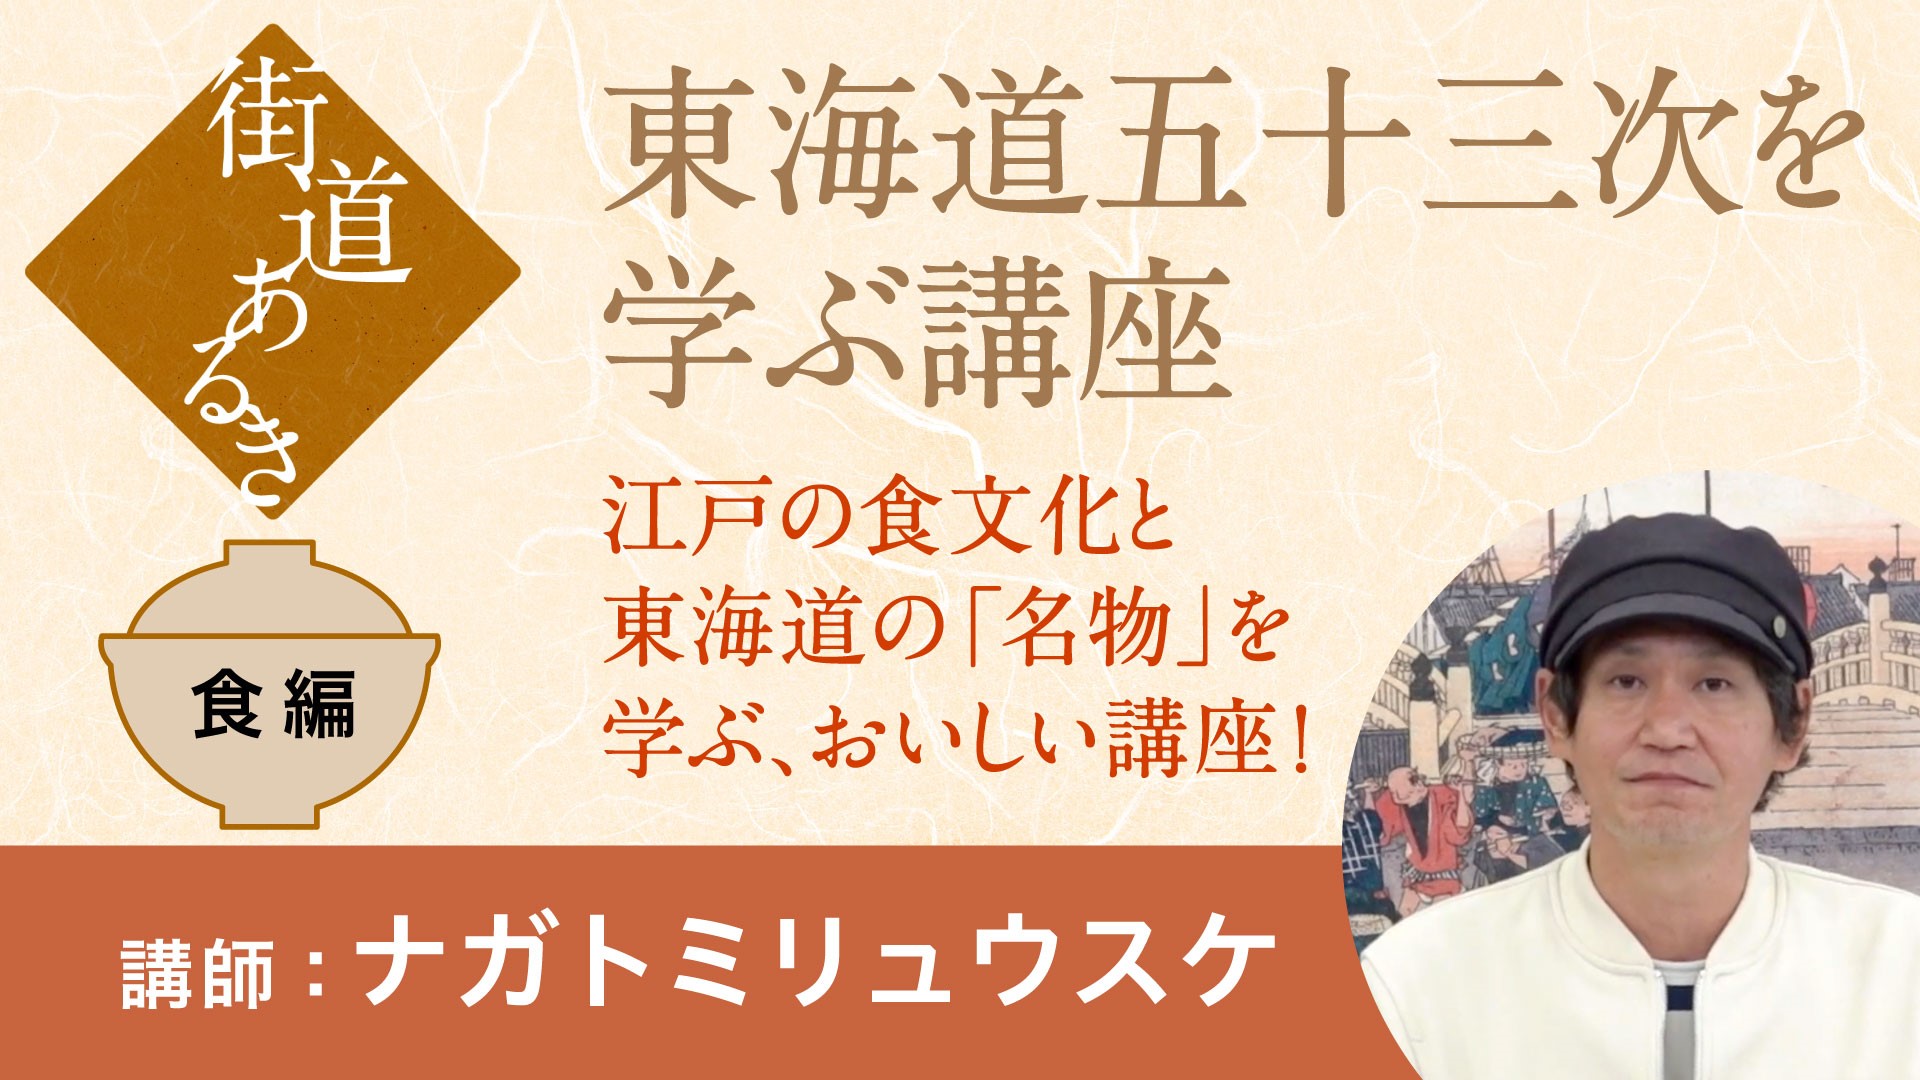 【街道】東海道五十三次を学ぶ講座 江戸の食文化・東海道の名物編